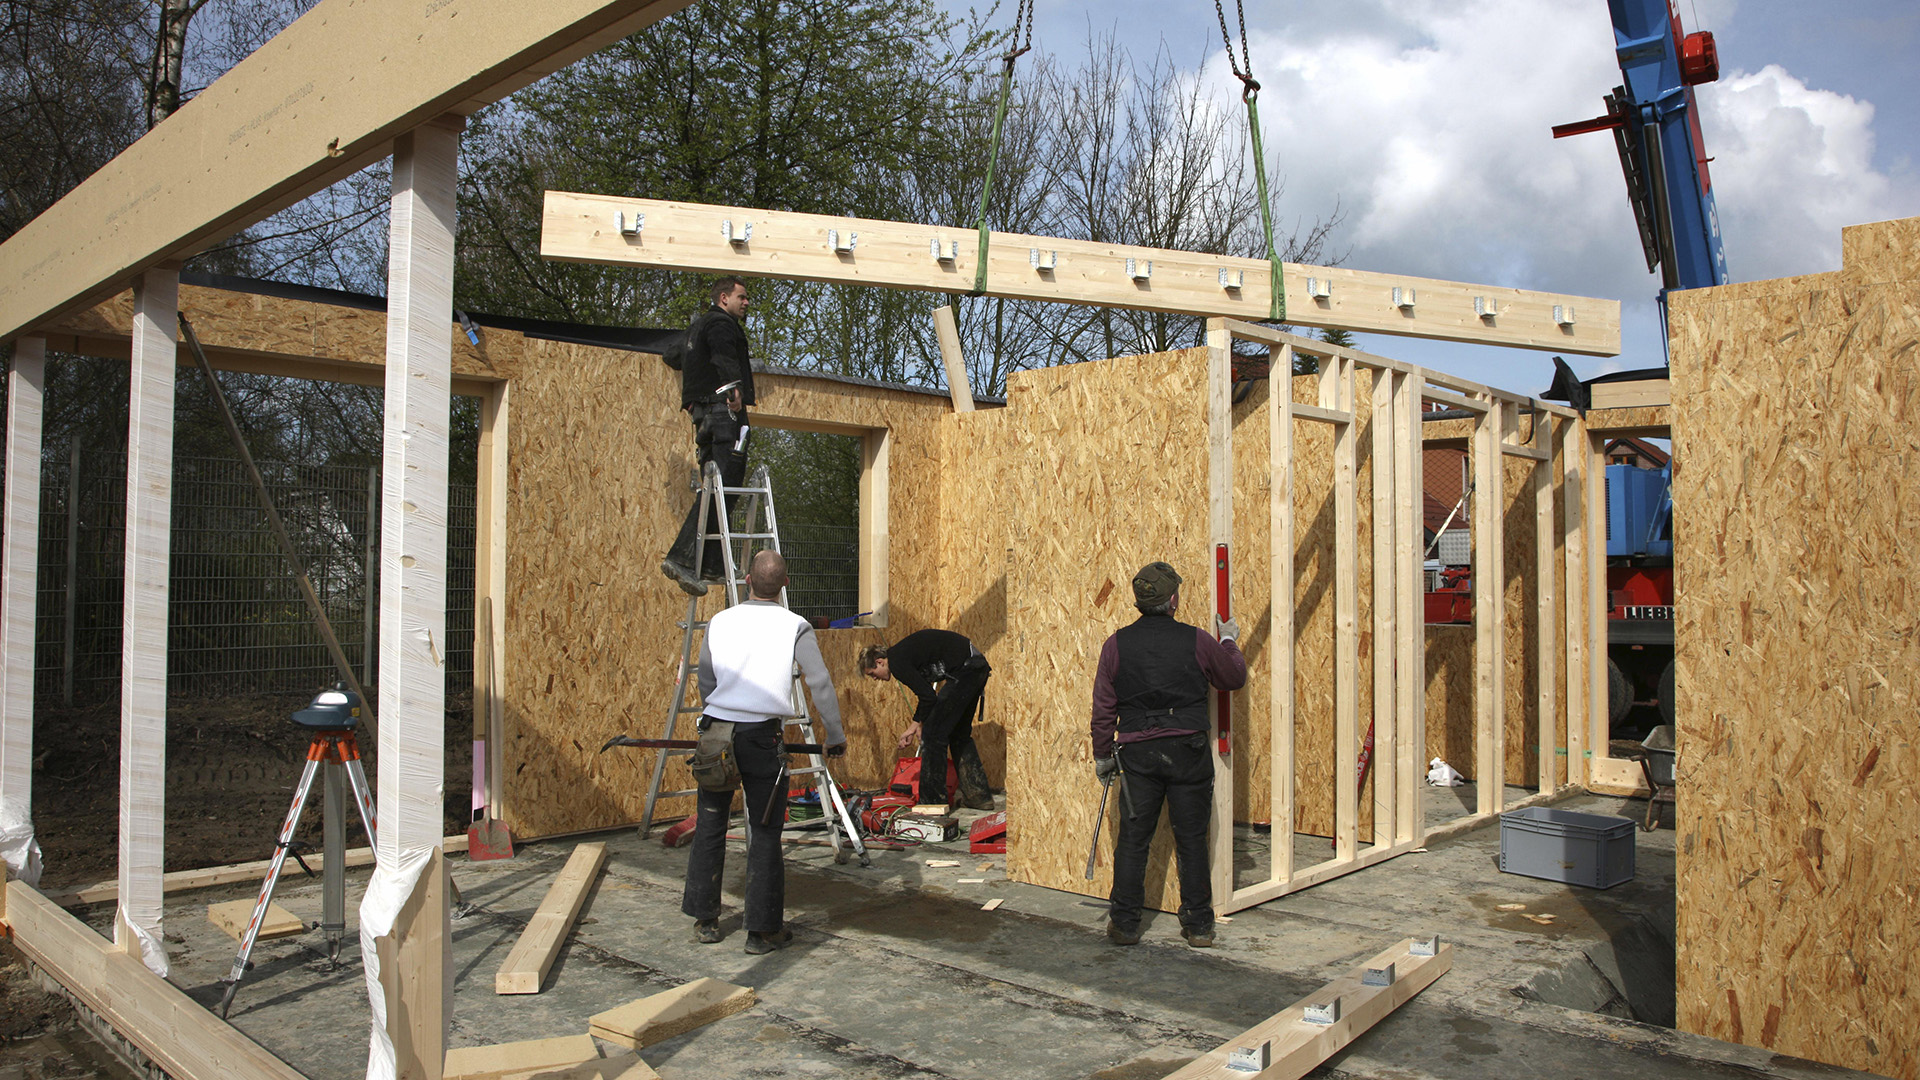 Zimmerleute bauen ein Holzhaus | picture alliance / imageBROKER